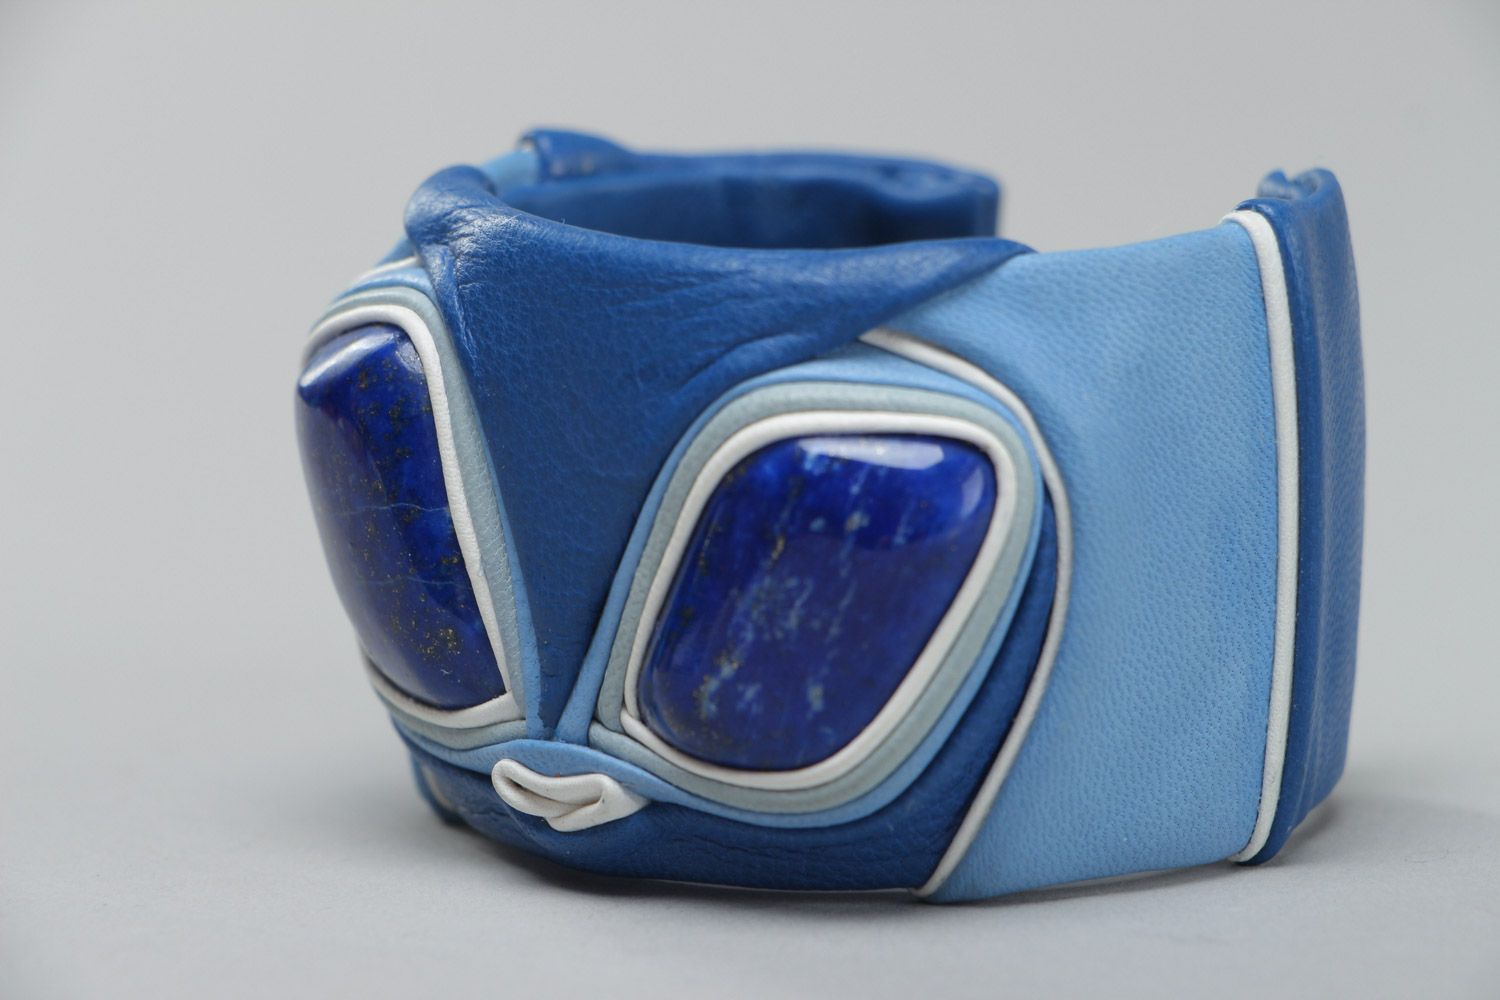 Schönes eigenartiges elegantes Armband aus Leder in Blau für kreative Looks foto 3